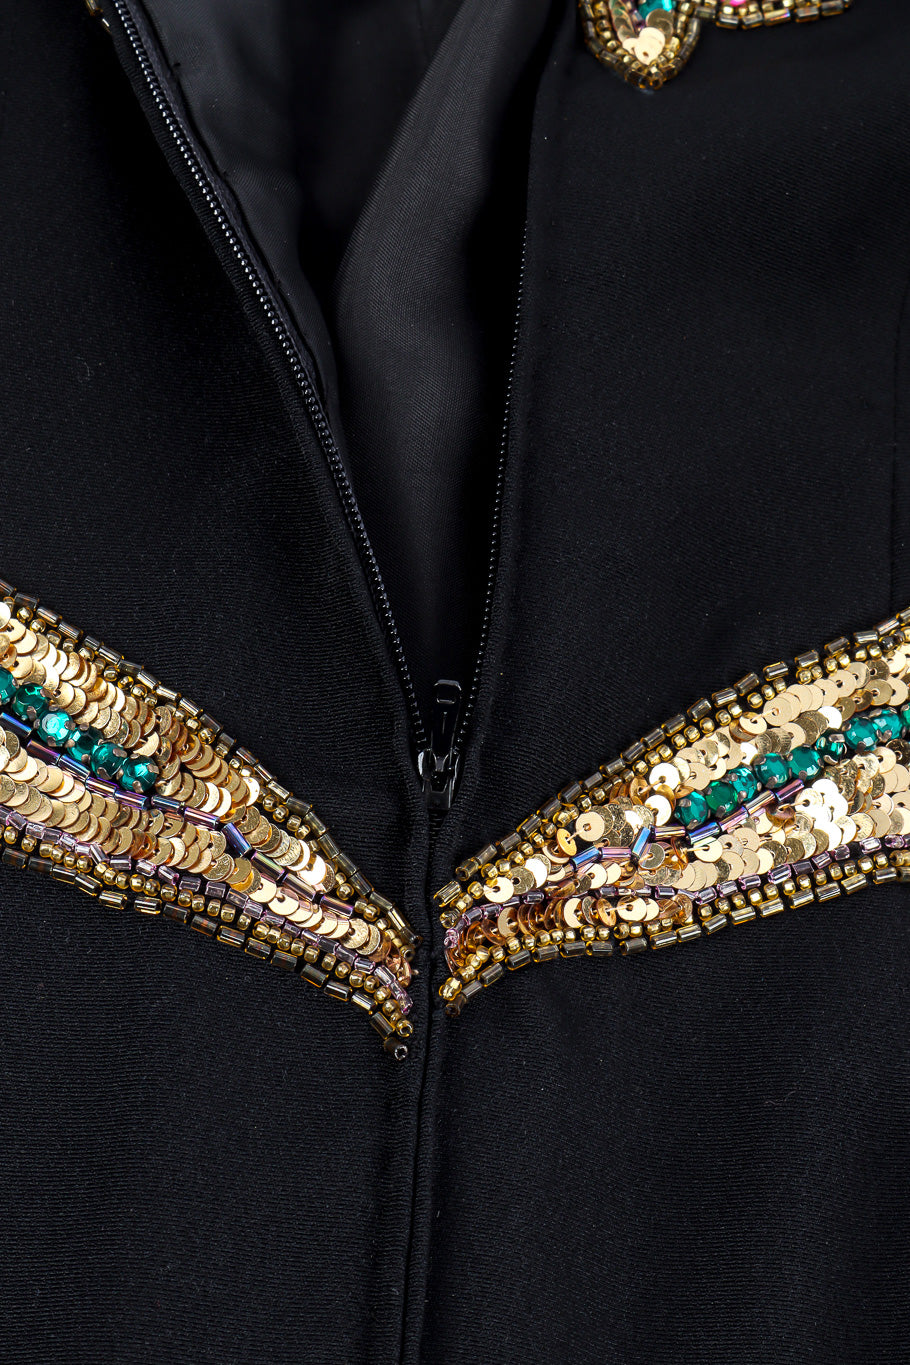 Victoria Royal sequin midi dress back zipper @recessla